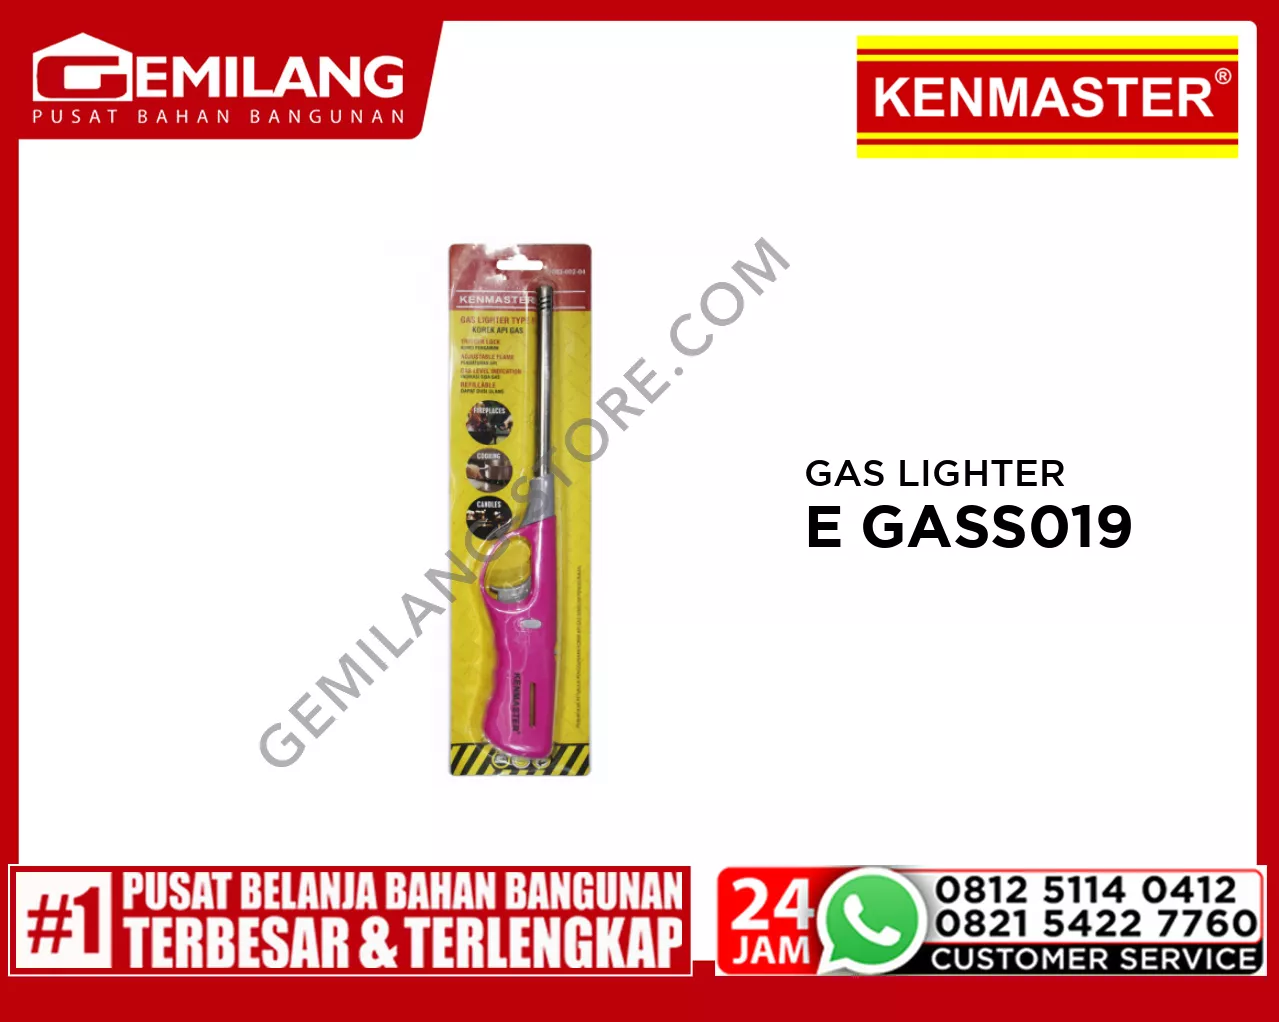 KENMASTER GAS LIGHTER E GASS019